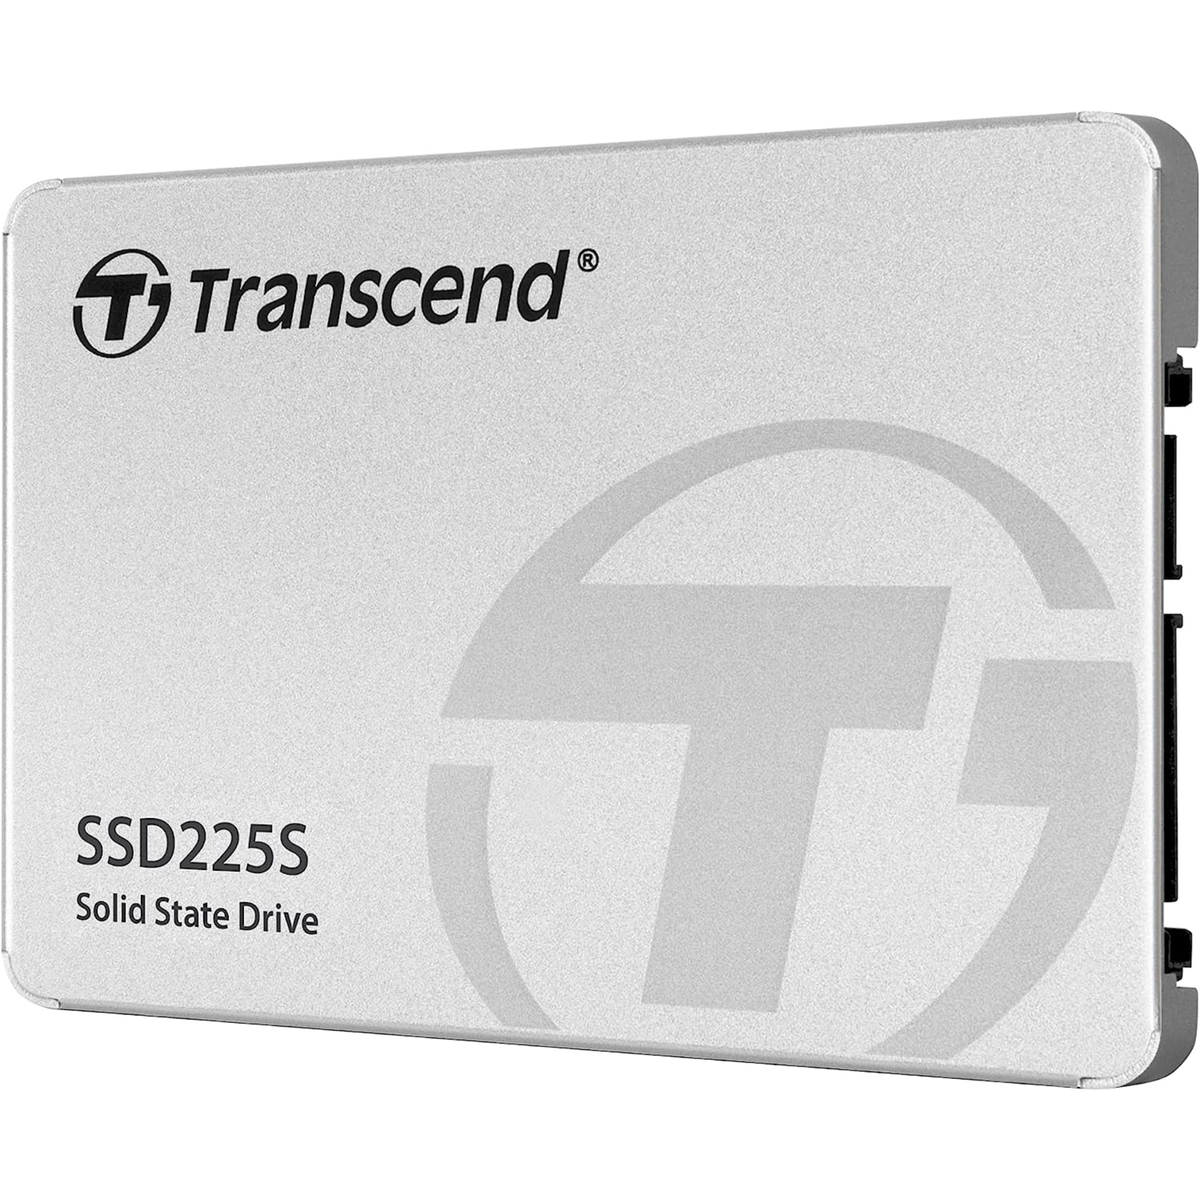 ترانسيند SSD داخلي، 1 تيرابايت، 1TSSD225S